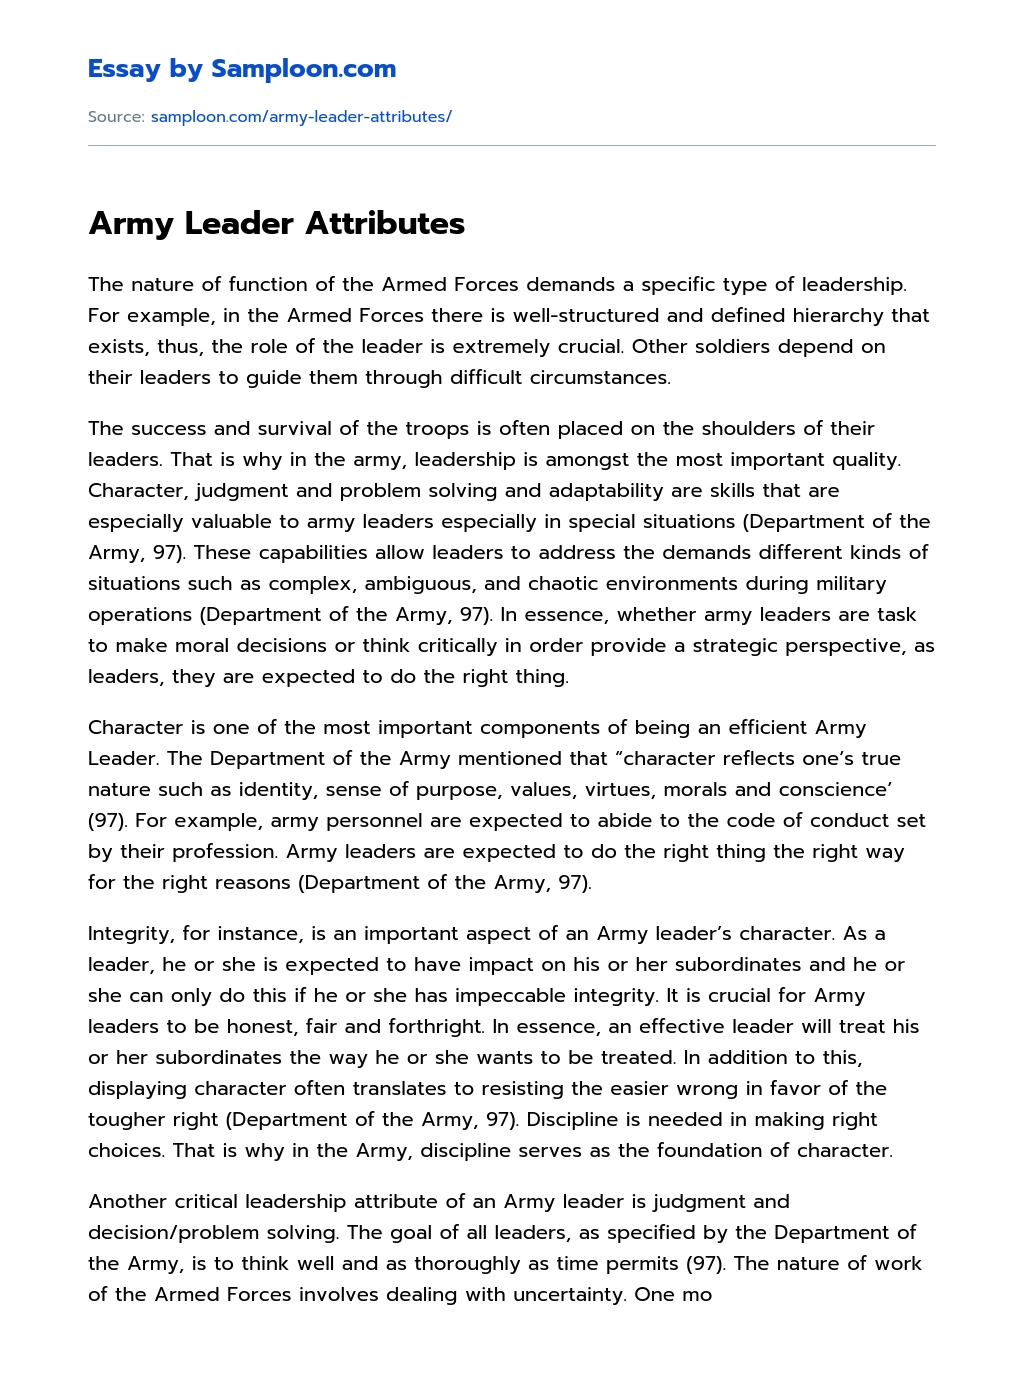 Army Leader Attributes Analytical Essay essay